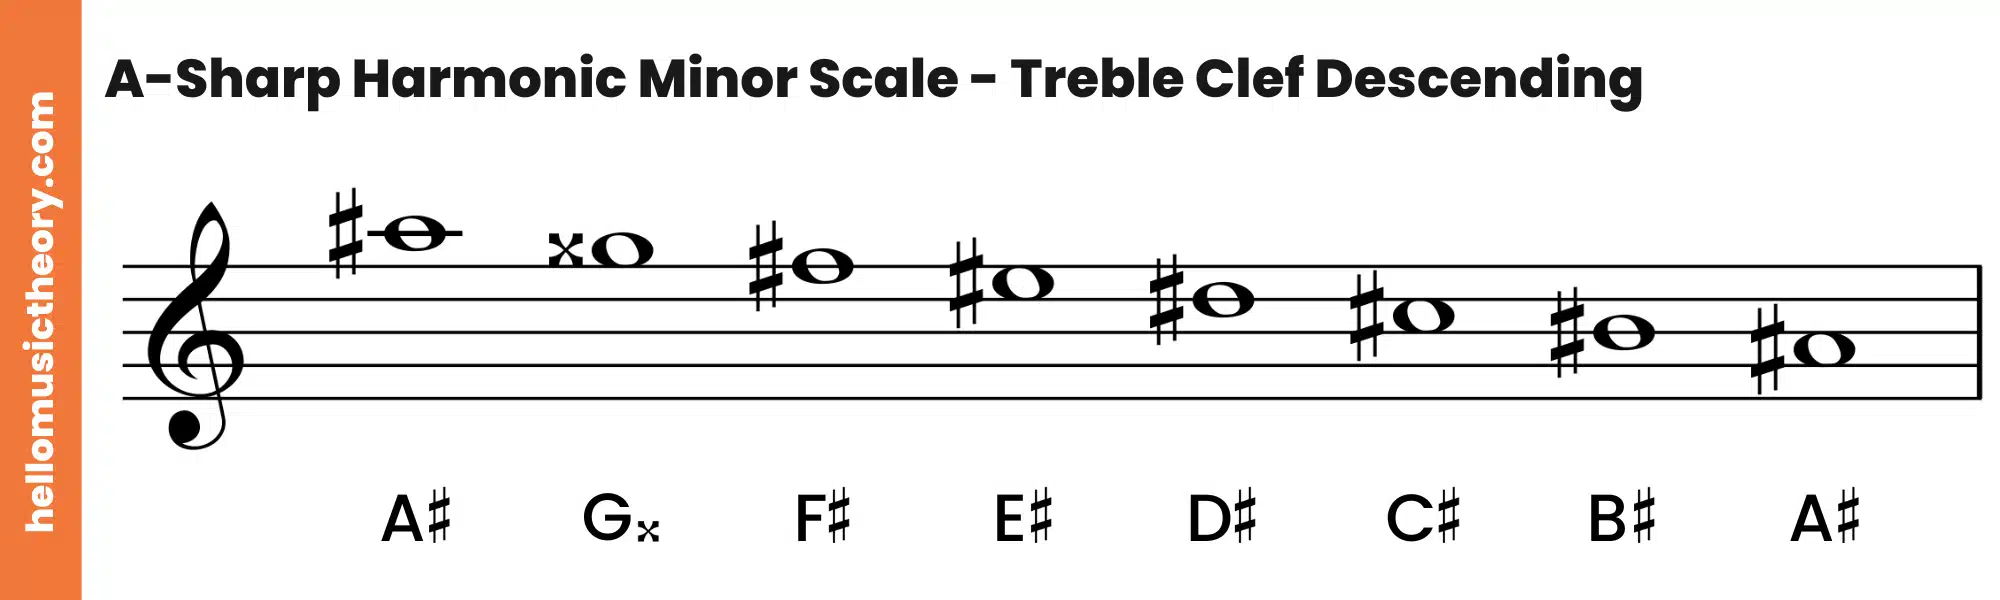 A-Sharp Harmonic Minor Scale Treble Clef Descending